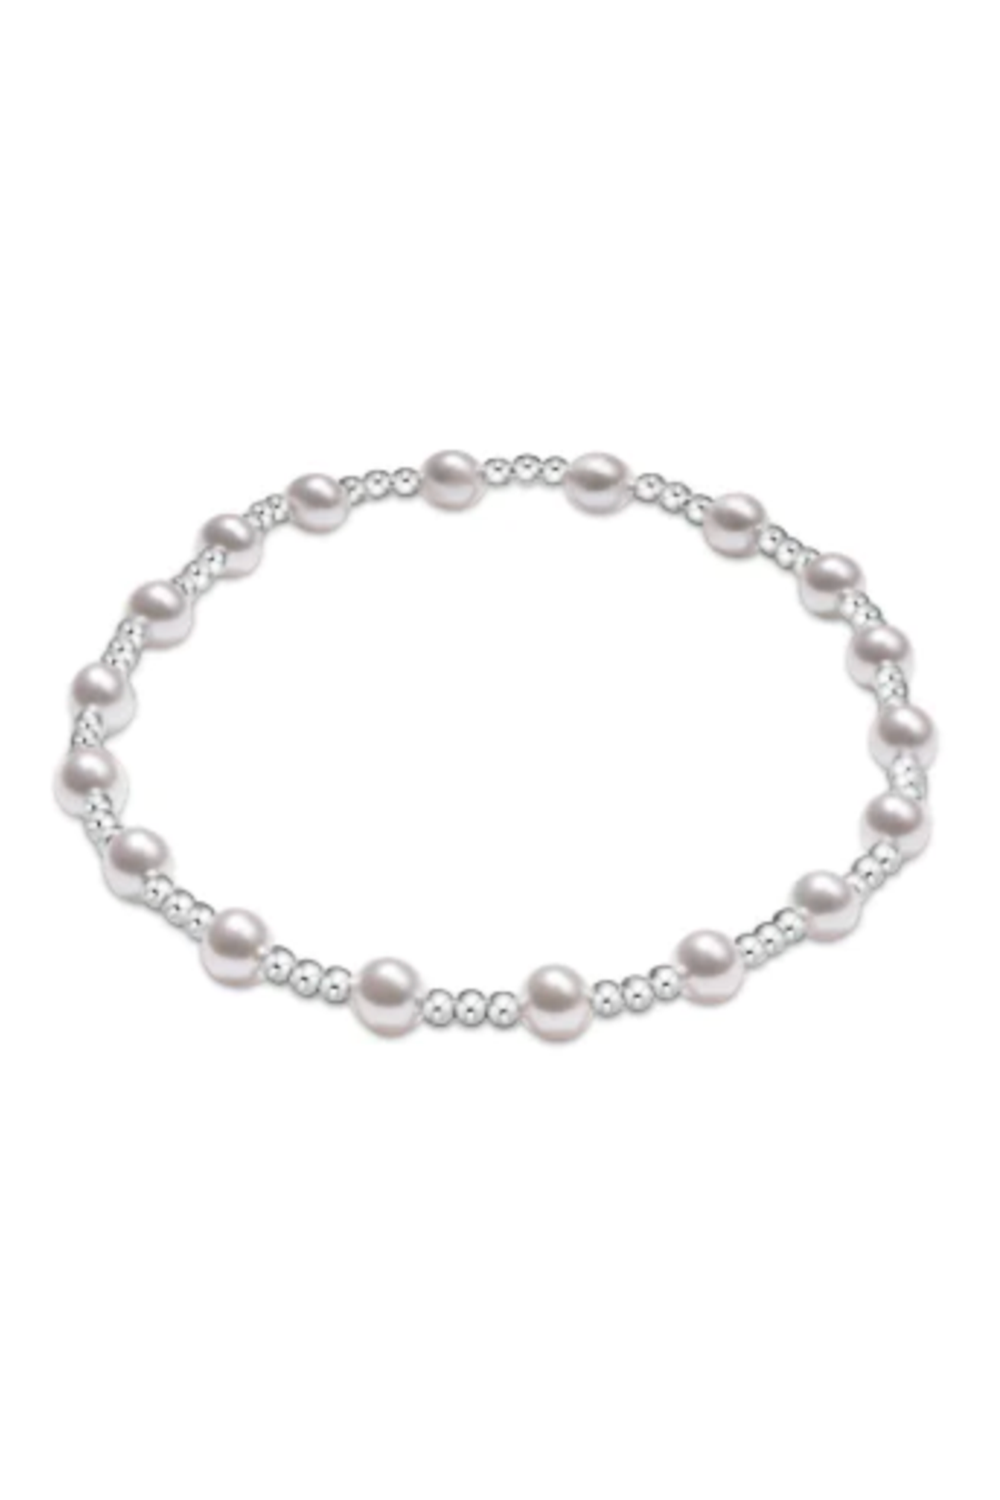 EN Classic Sincerity Bracelet - Mixed Sterling + Pearl